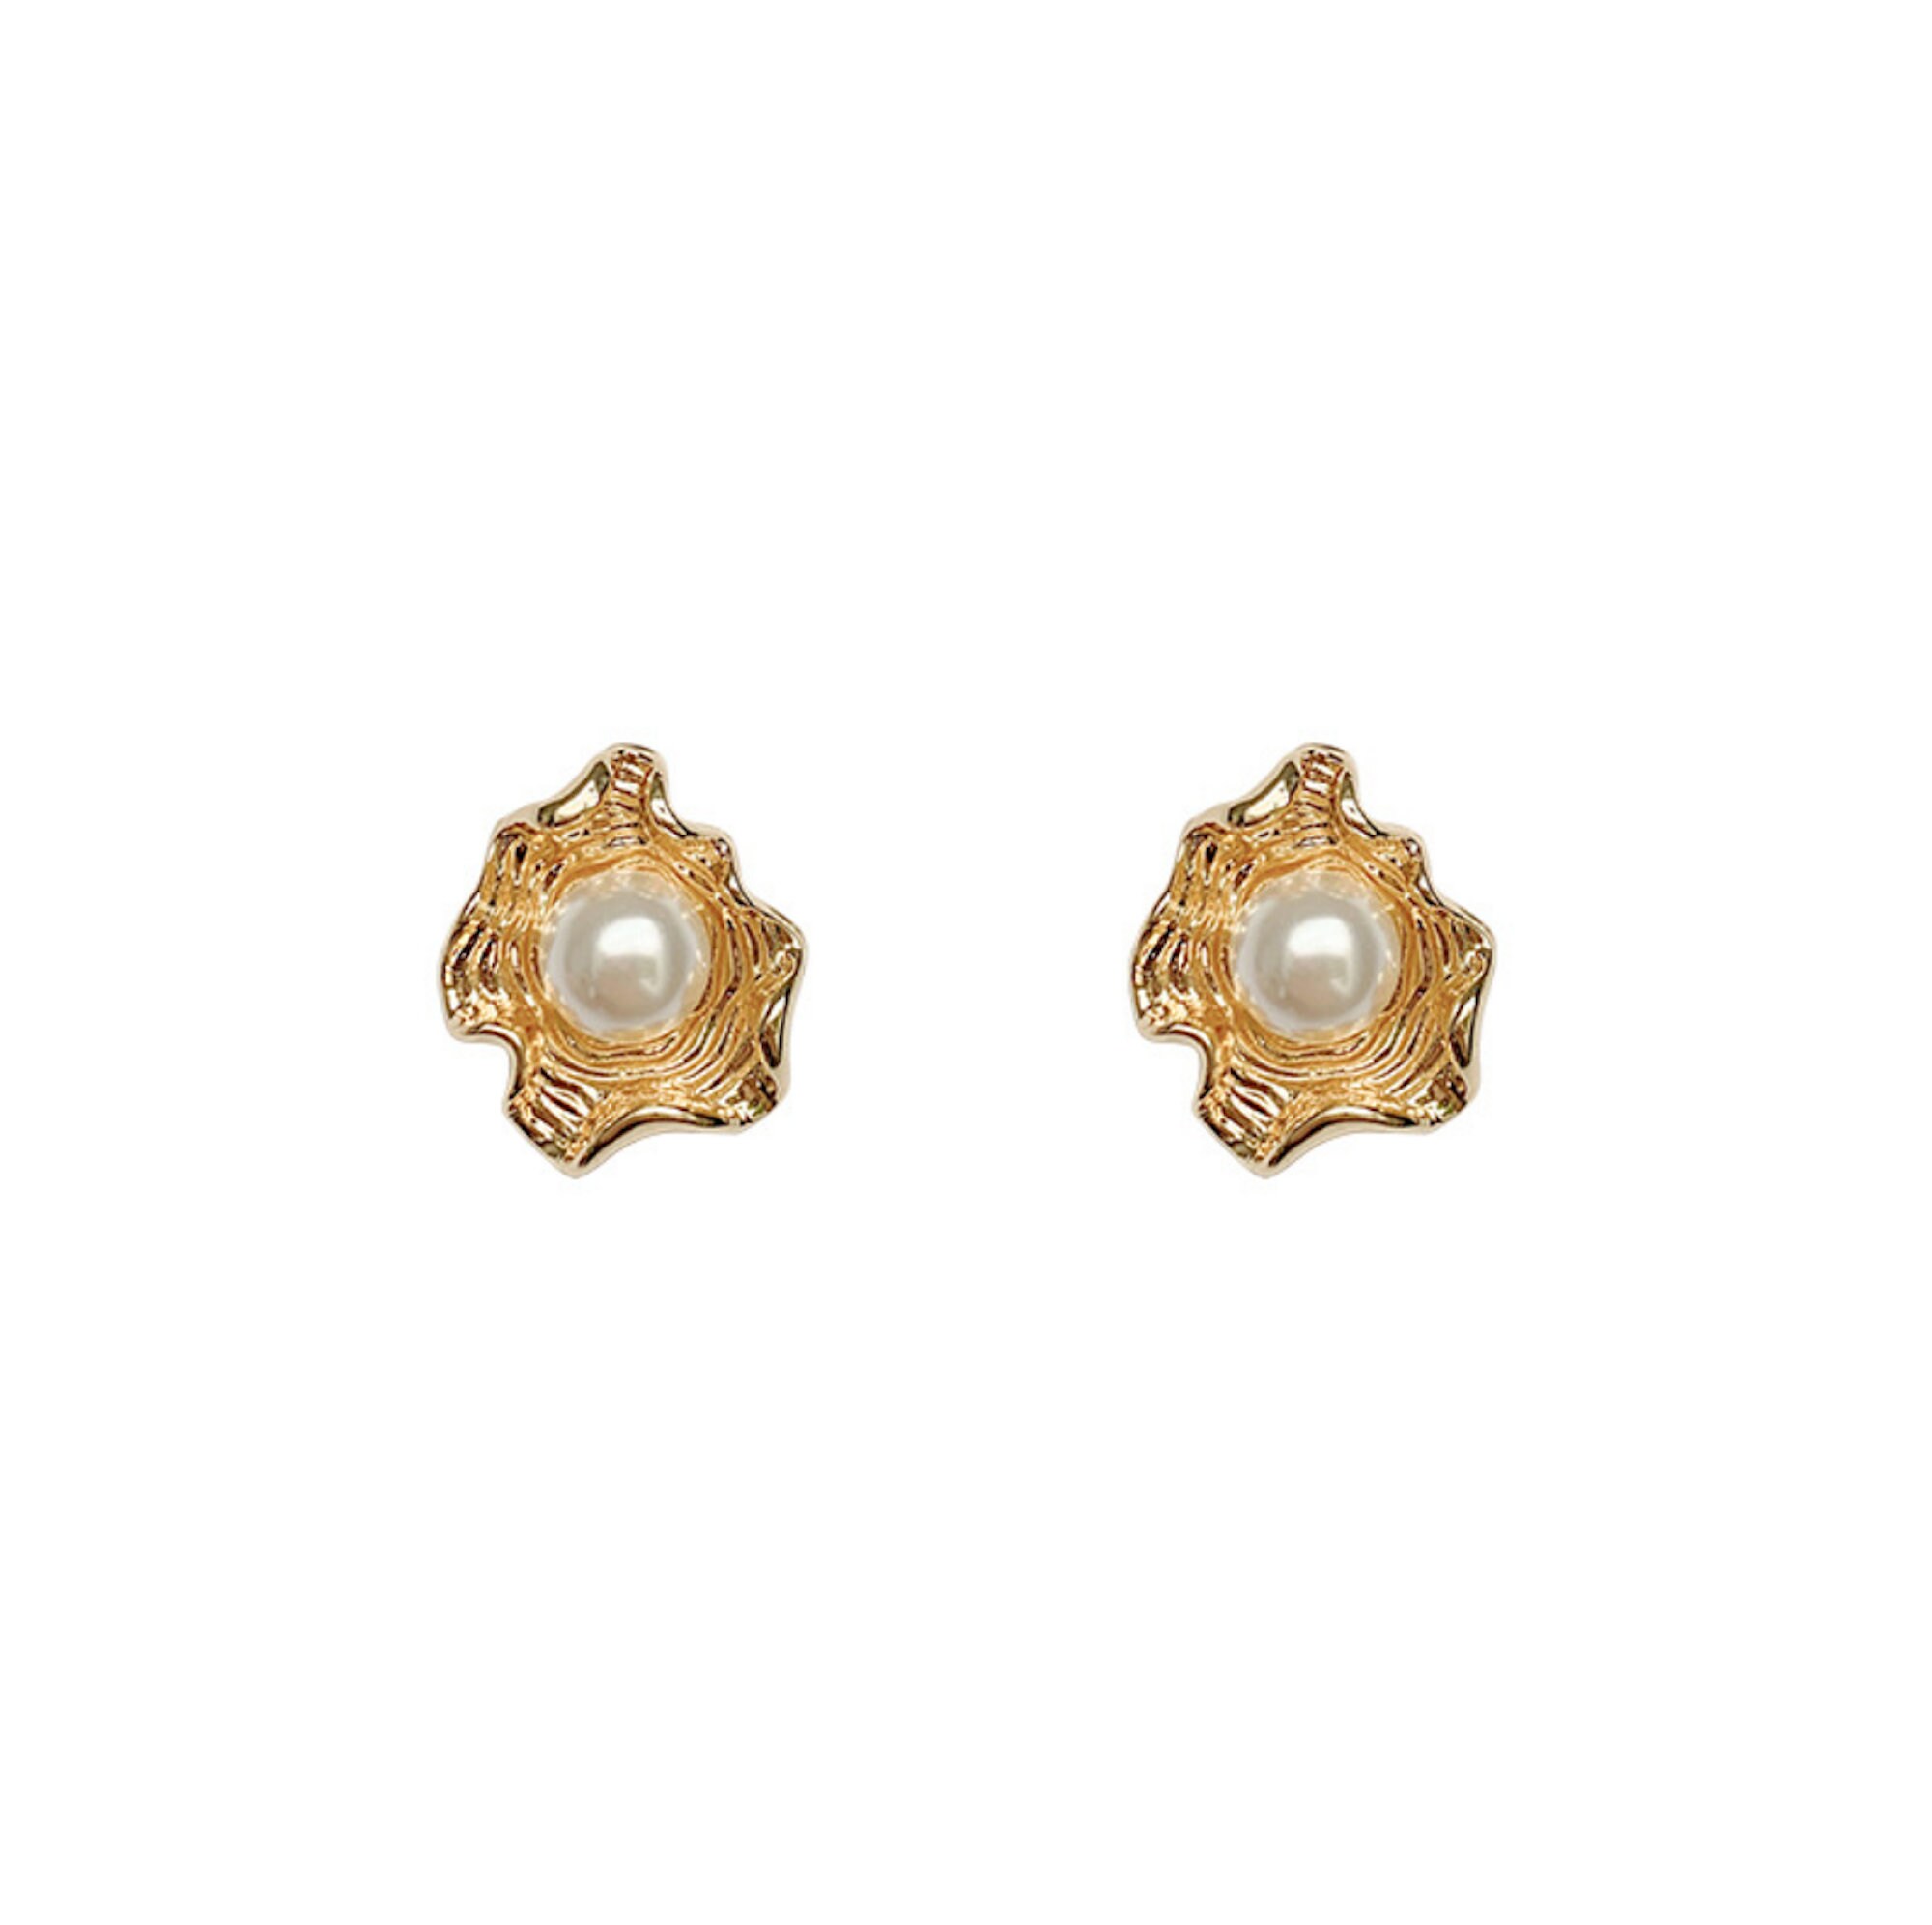 Irregular Texture Pearl Earrings Dainty Earrings Gold 14k | Etsy